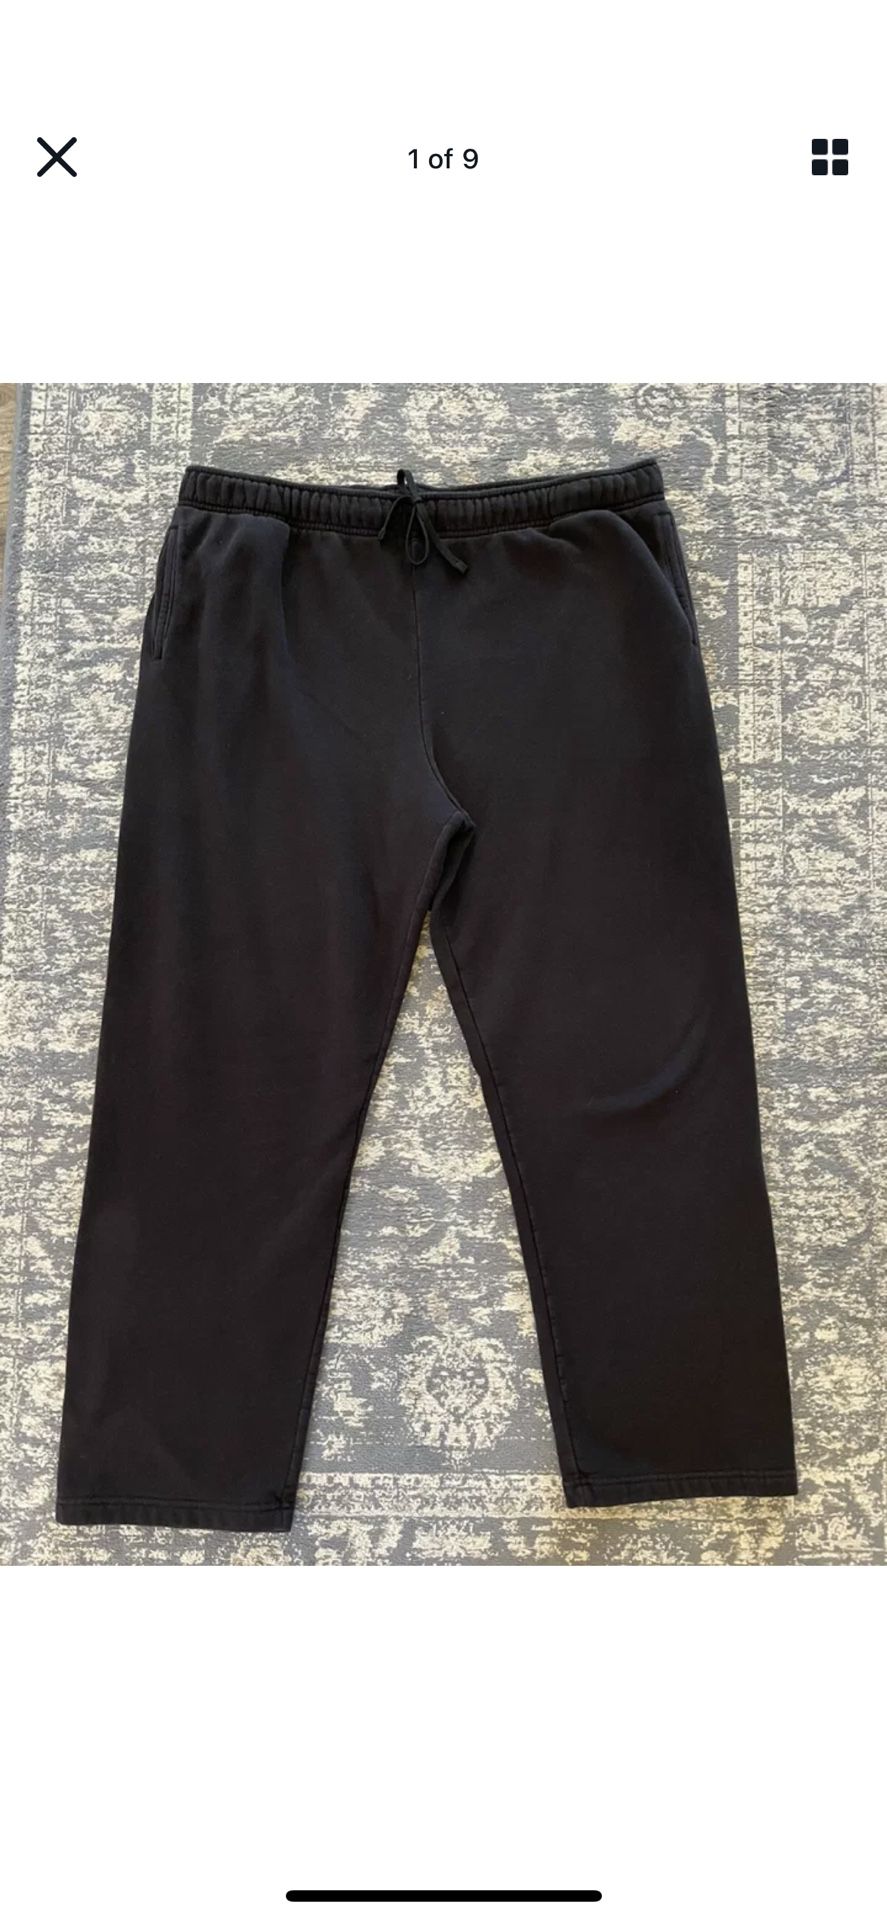 Tek Gear Men’s Activewear Black Sweatpants Cotton Blend Pants - Size XXL